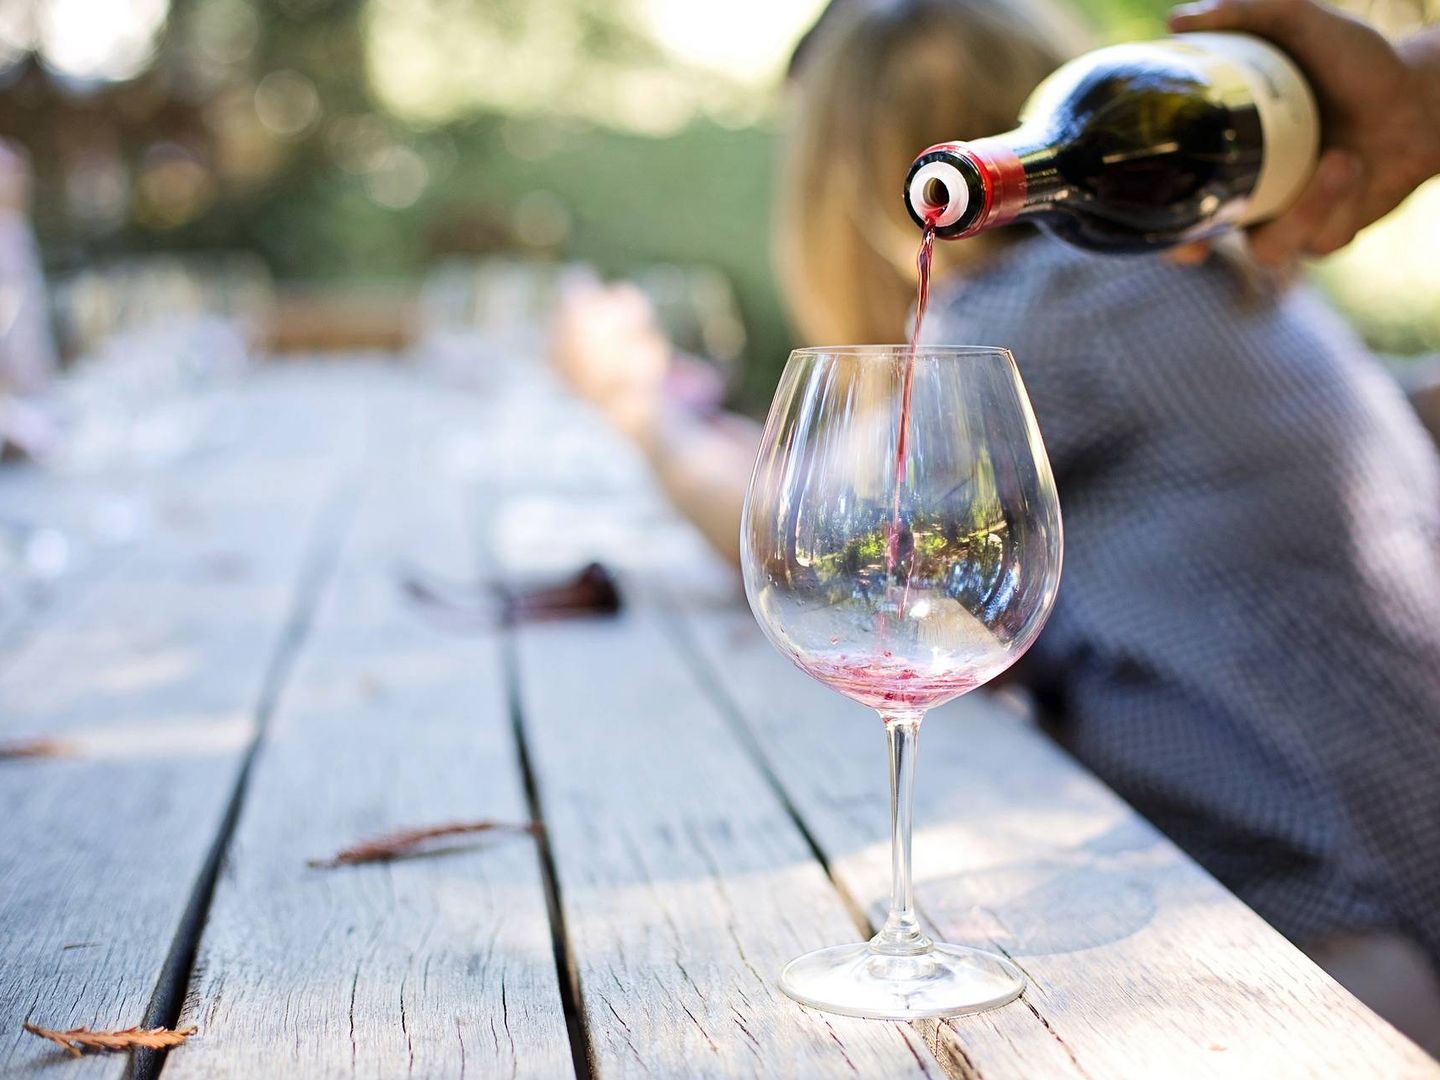 Vinotecas modernas  Neveras de vinos para casa - Create